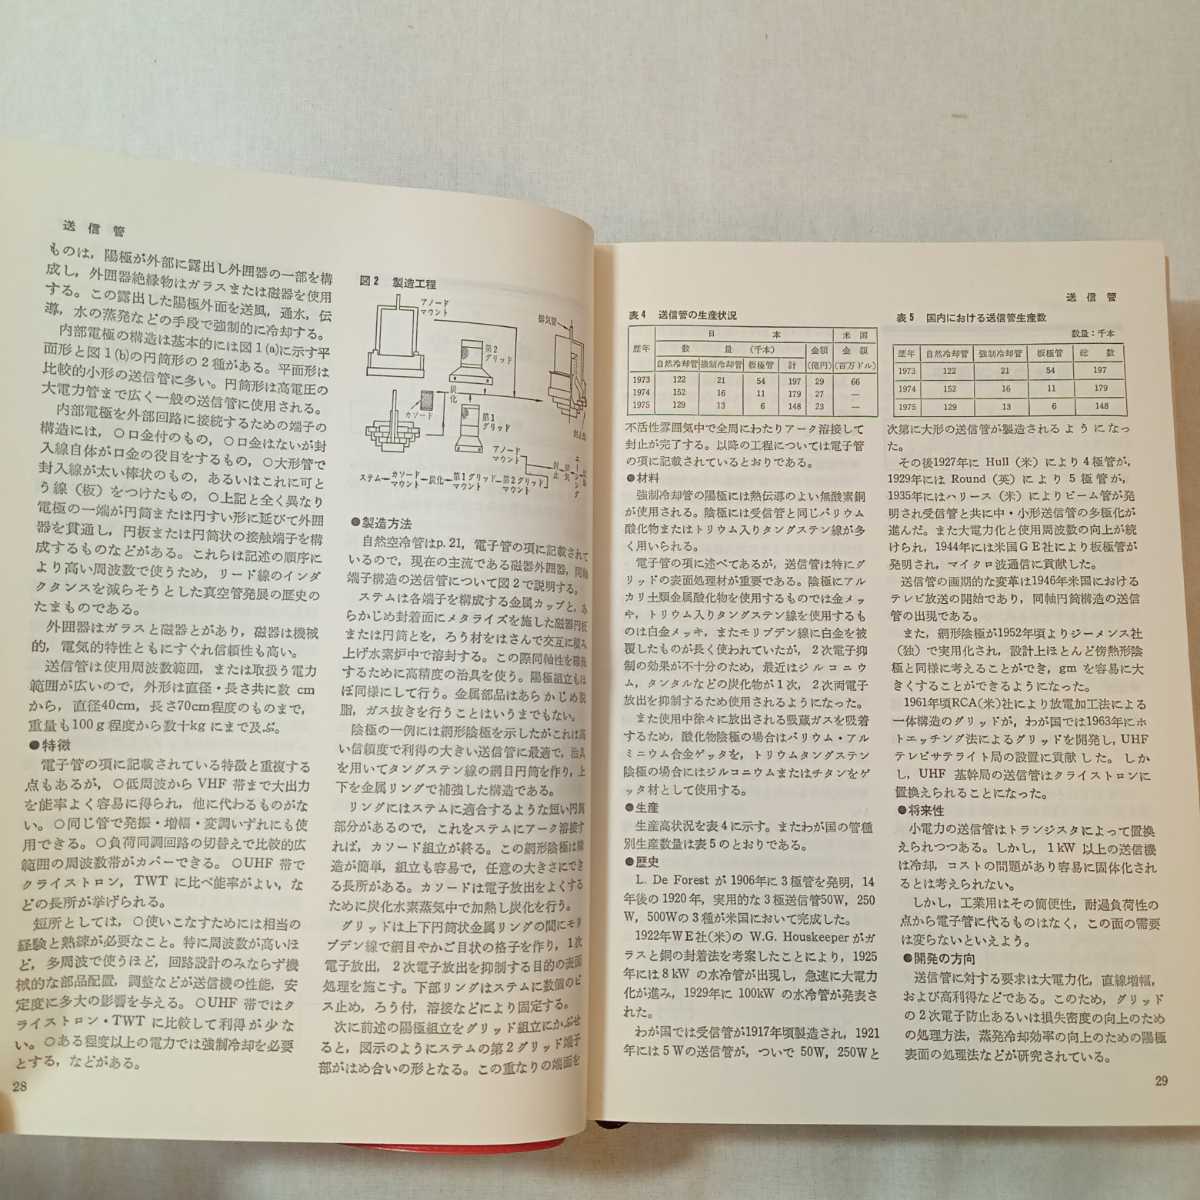 zaa-381! новейший электронный детали рука книжка радиоволны газета фирма (1977 год )